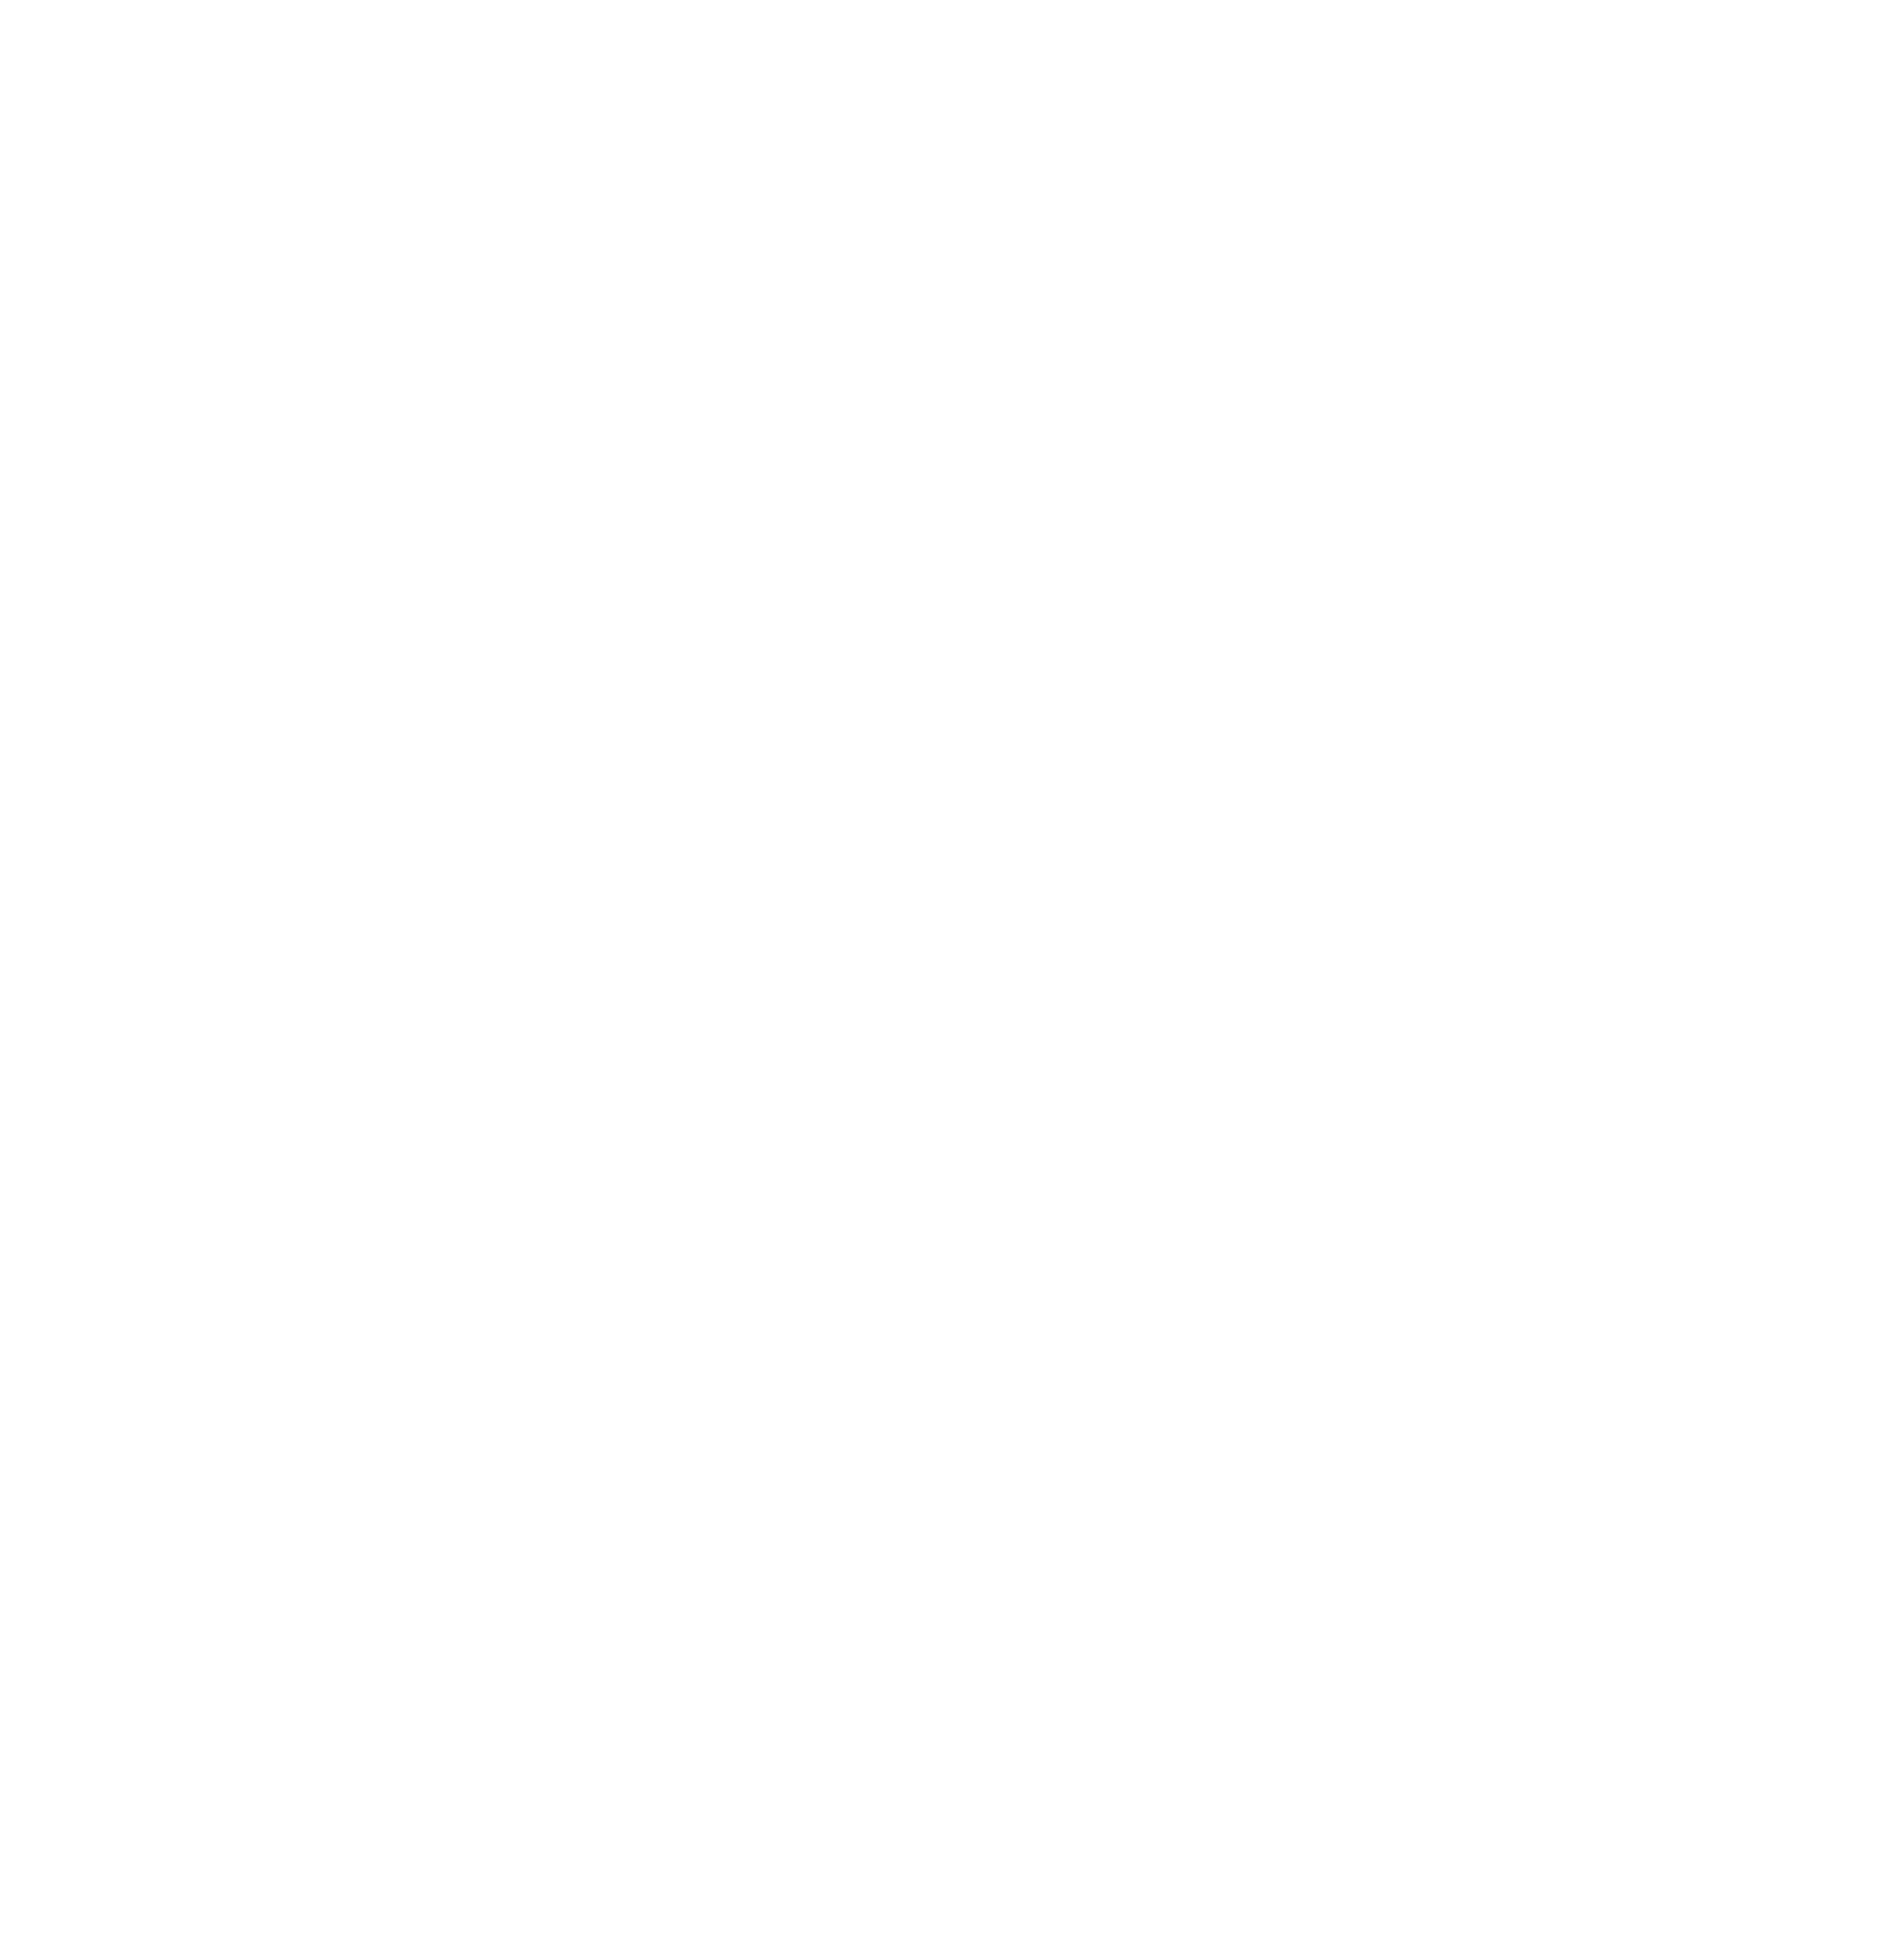 Epic Megagrant